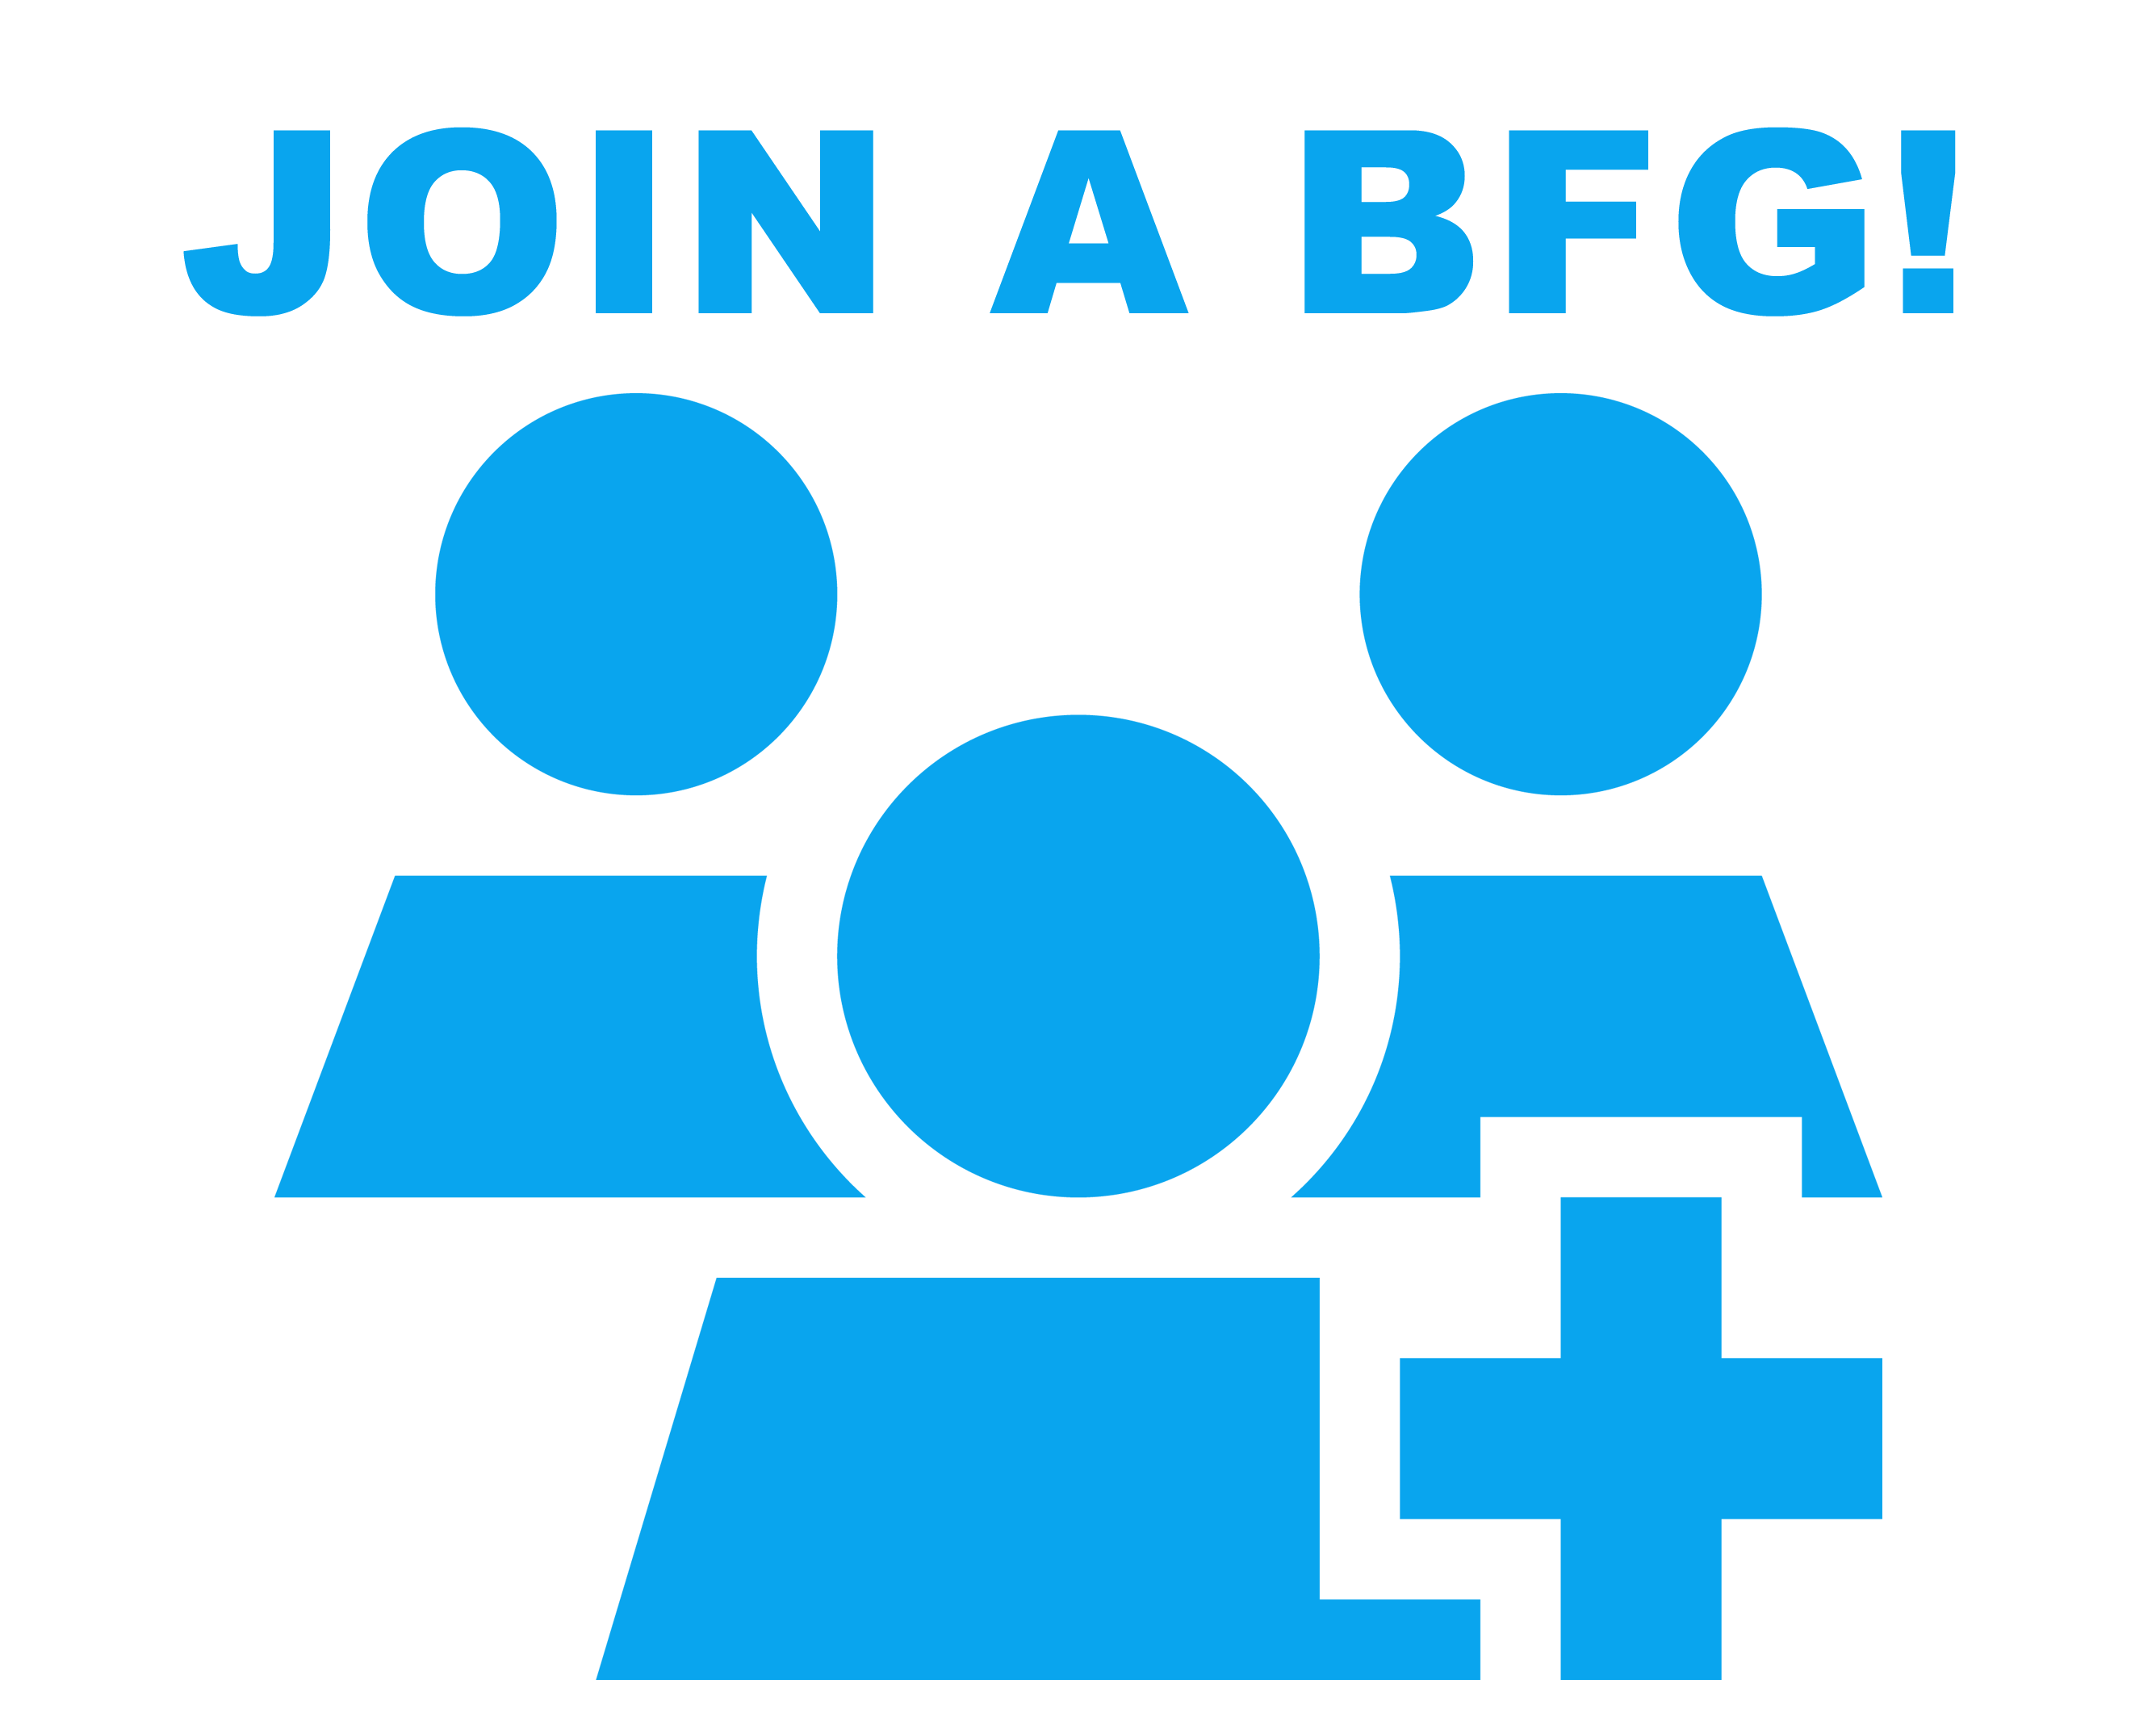 join_a_bfg.png